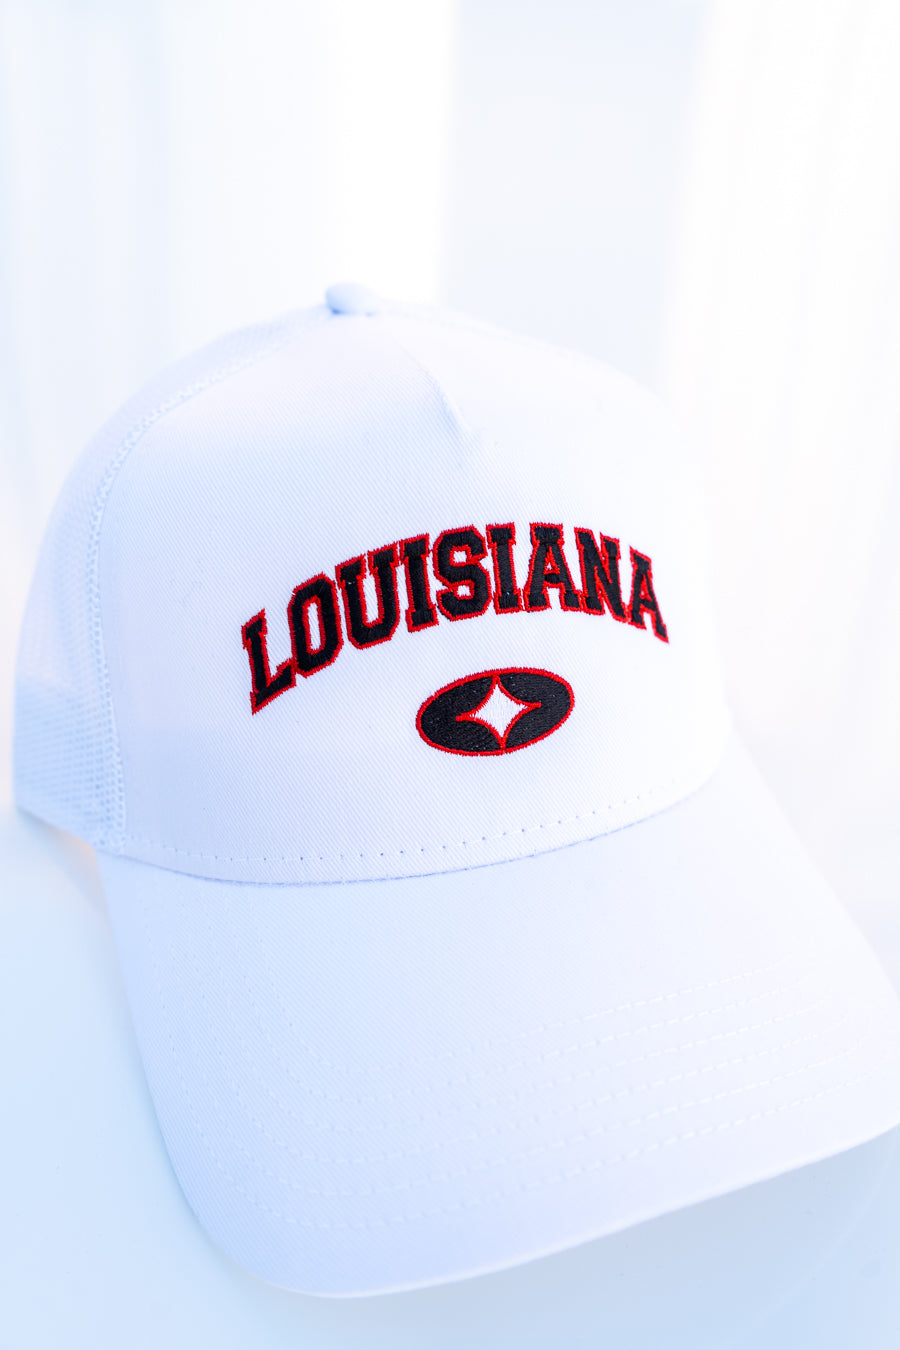 Louisiana Retro Snapback (White/Red)